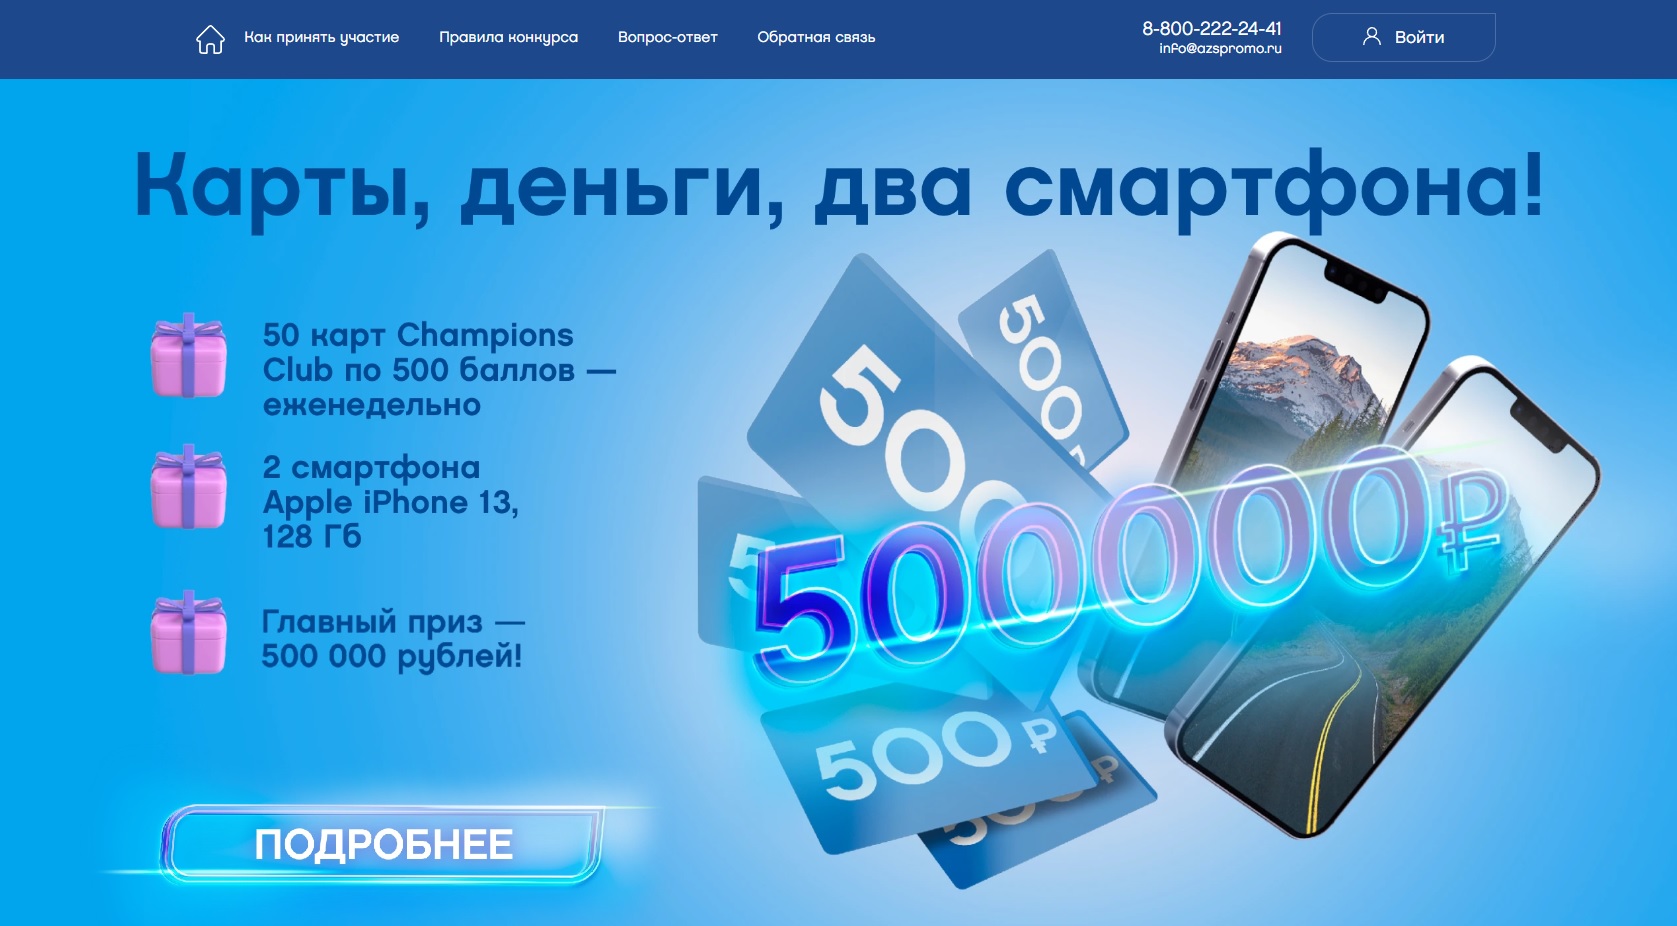 Промо-акция Neste Oil: «Карты, деньги, два смартфона!»